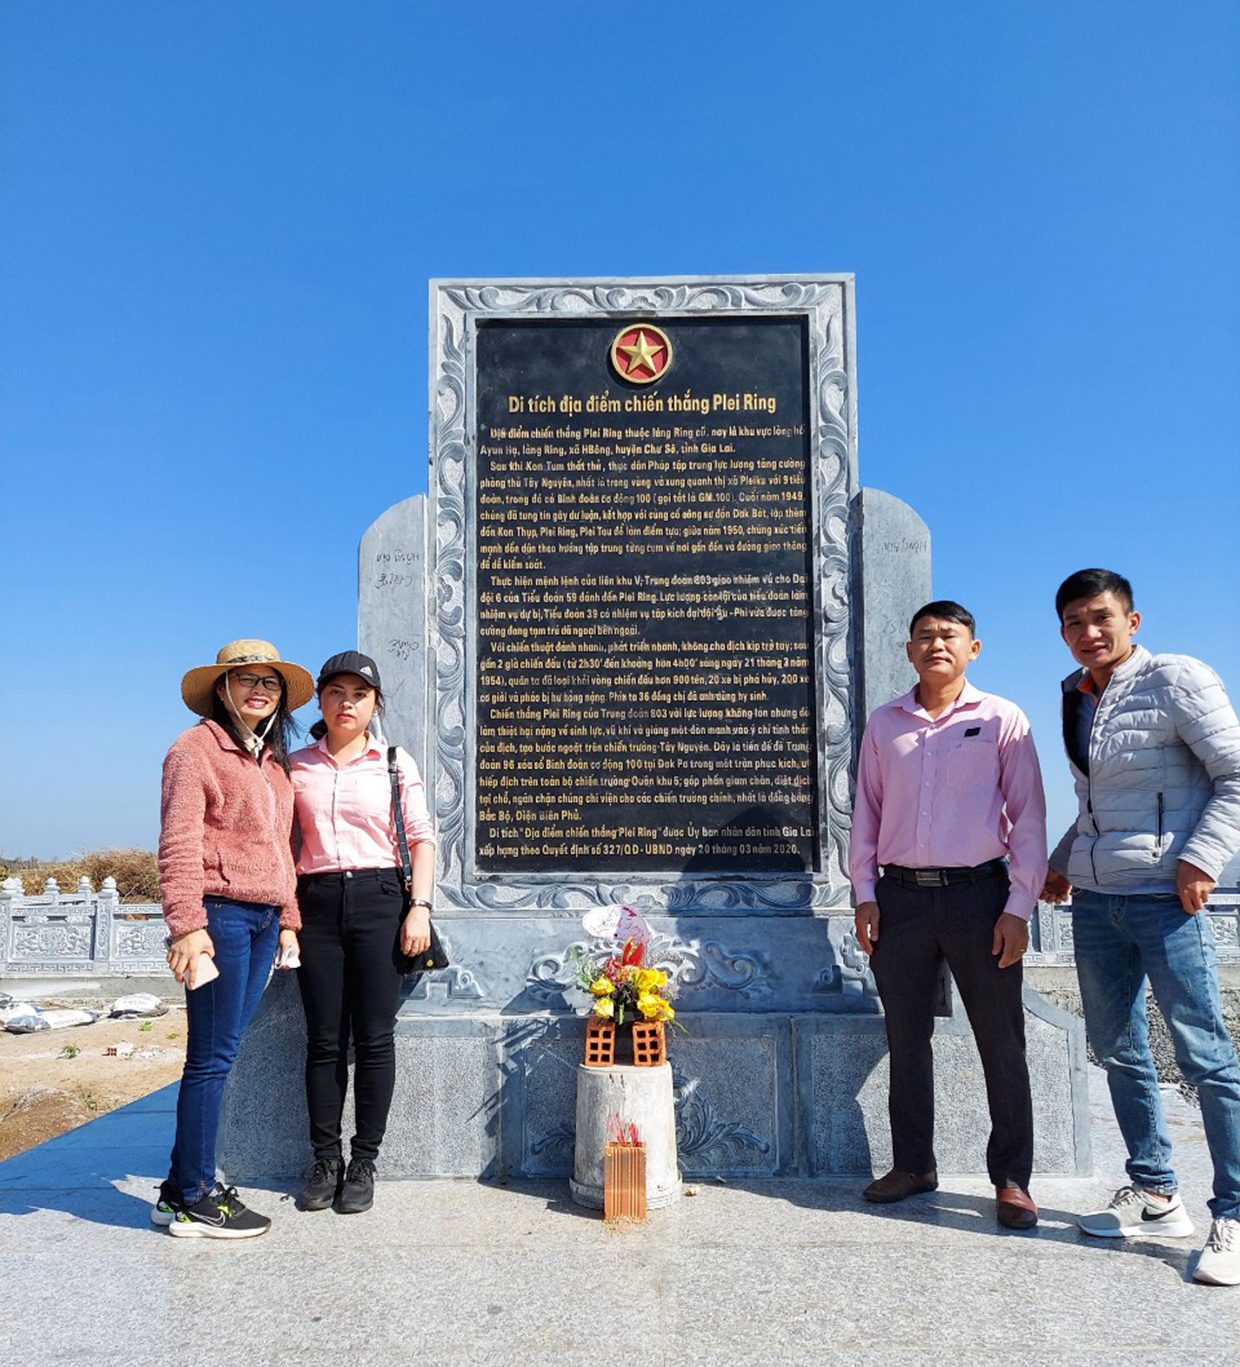 Di tích lịch sử địa điểm Chiến thắng Plei Ring (xã Hbông) sẽ là điểm kết nối với Khu du lịch sinh thái hồ Ayun Hạ hấp dẫn du khách nếu được quan tâm đầu tư đồng bộ. Ảnh: Quang Tấn